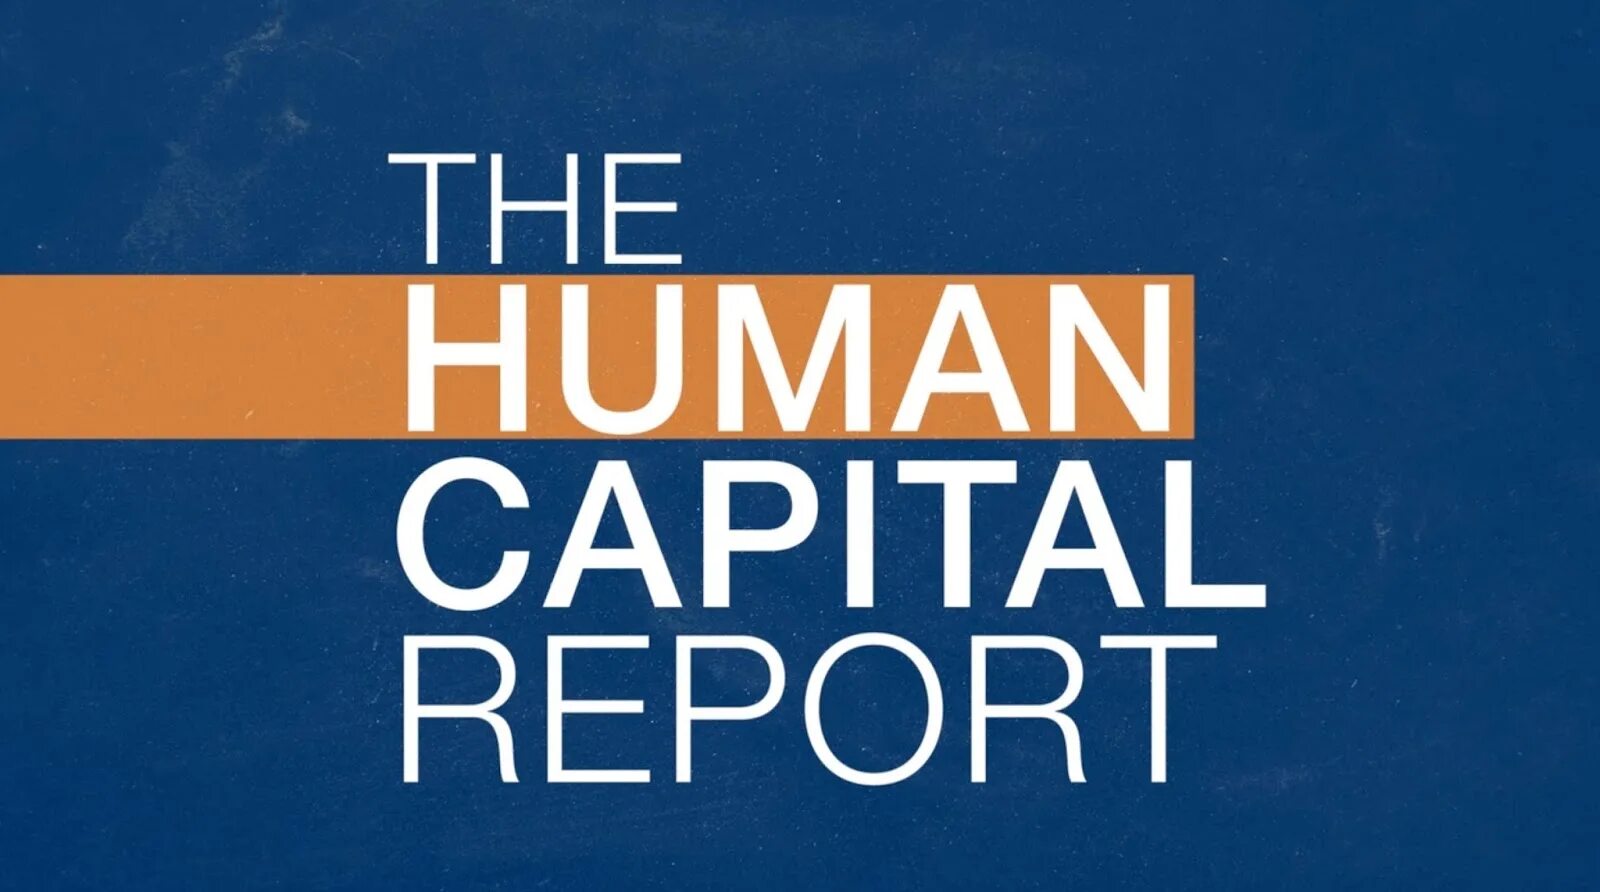 Human Capital. Human index